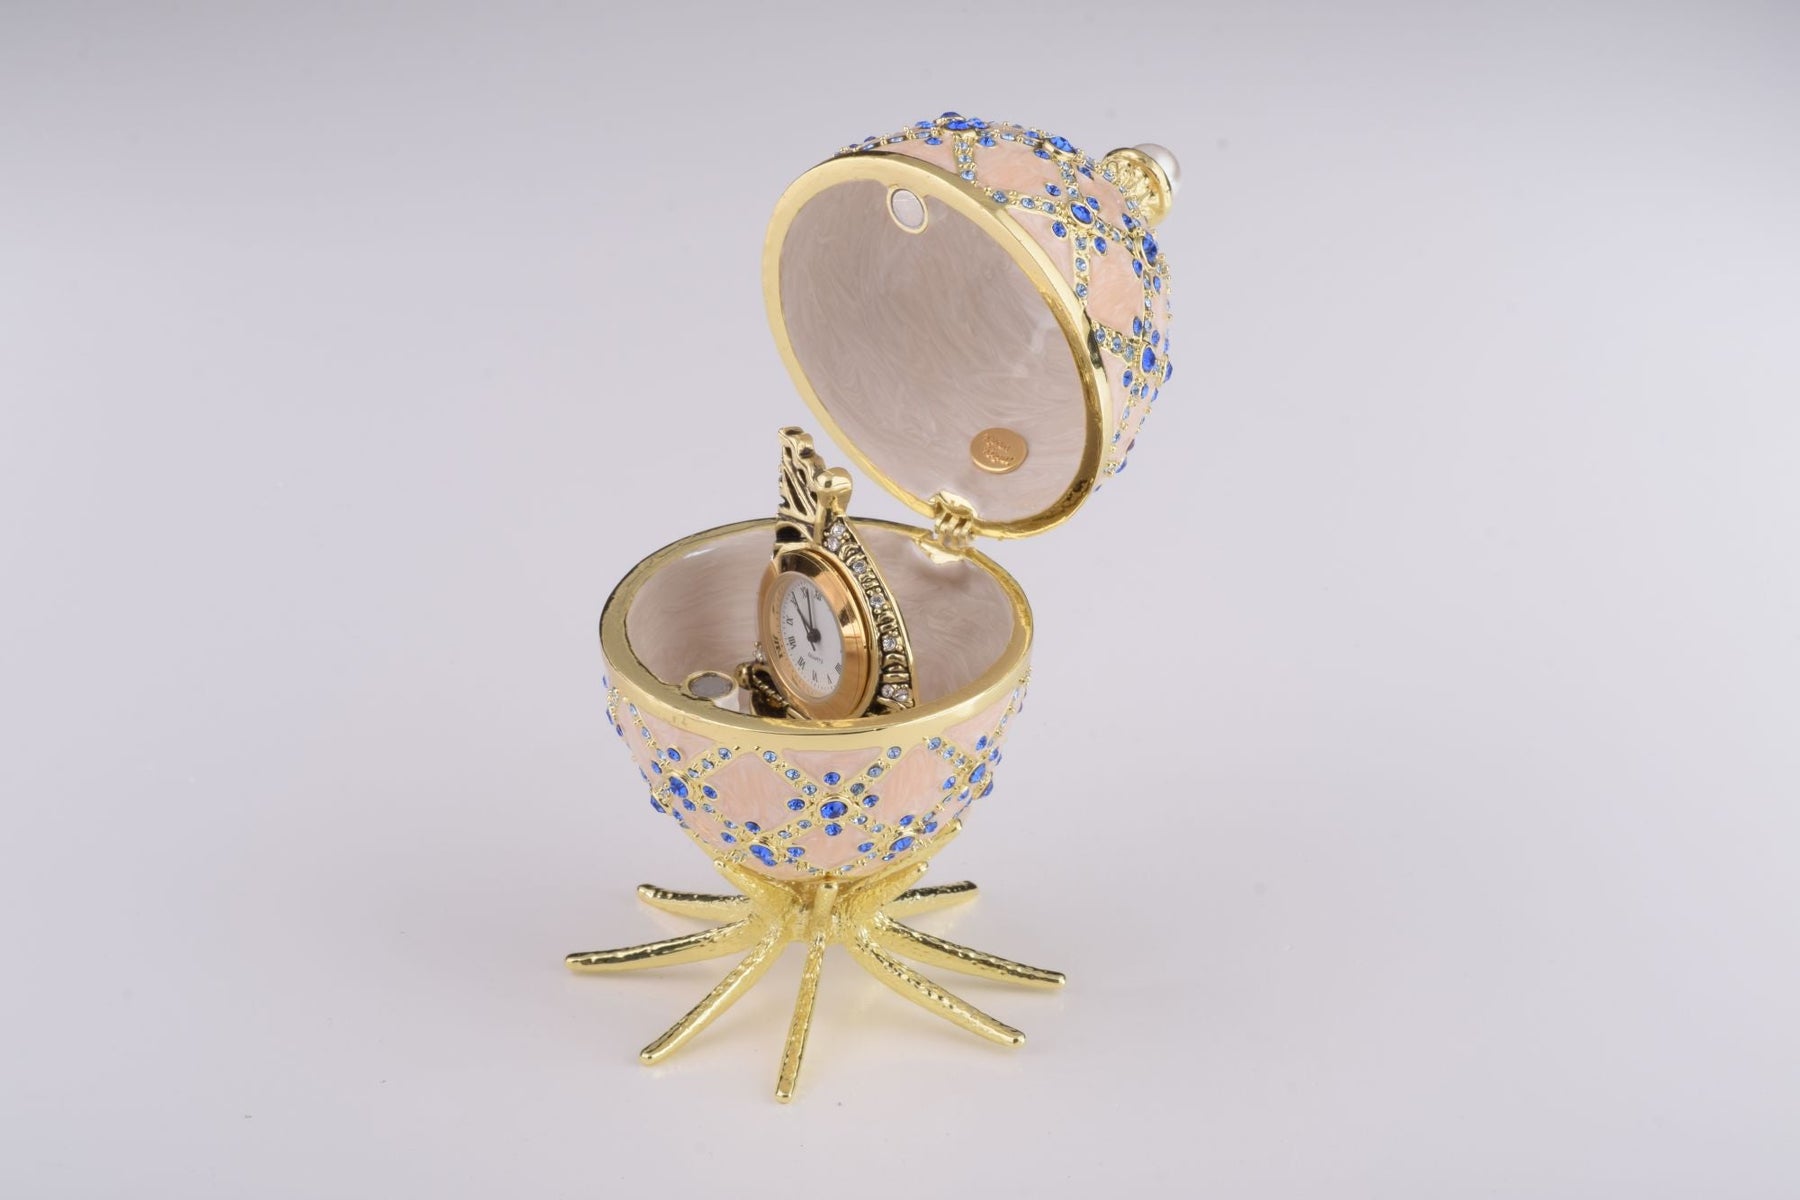 Œuf de Fabergé rose avec horloge à l'intérieur